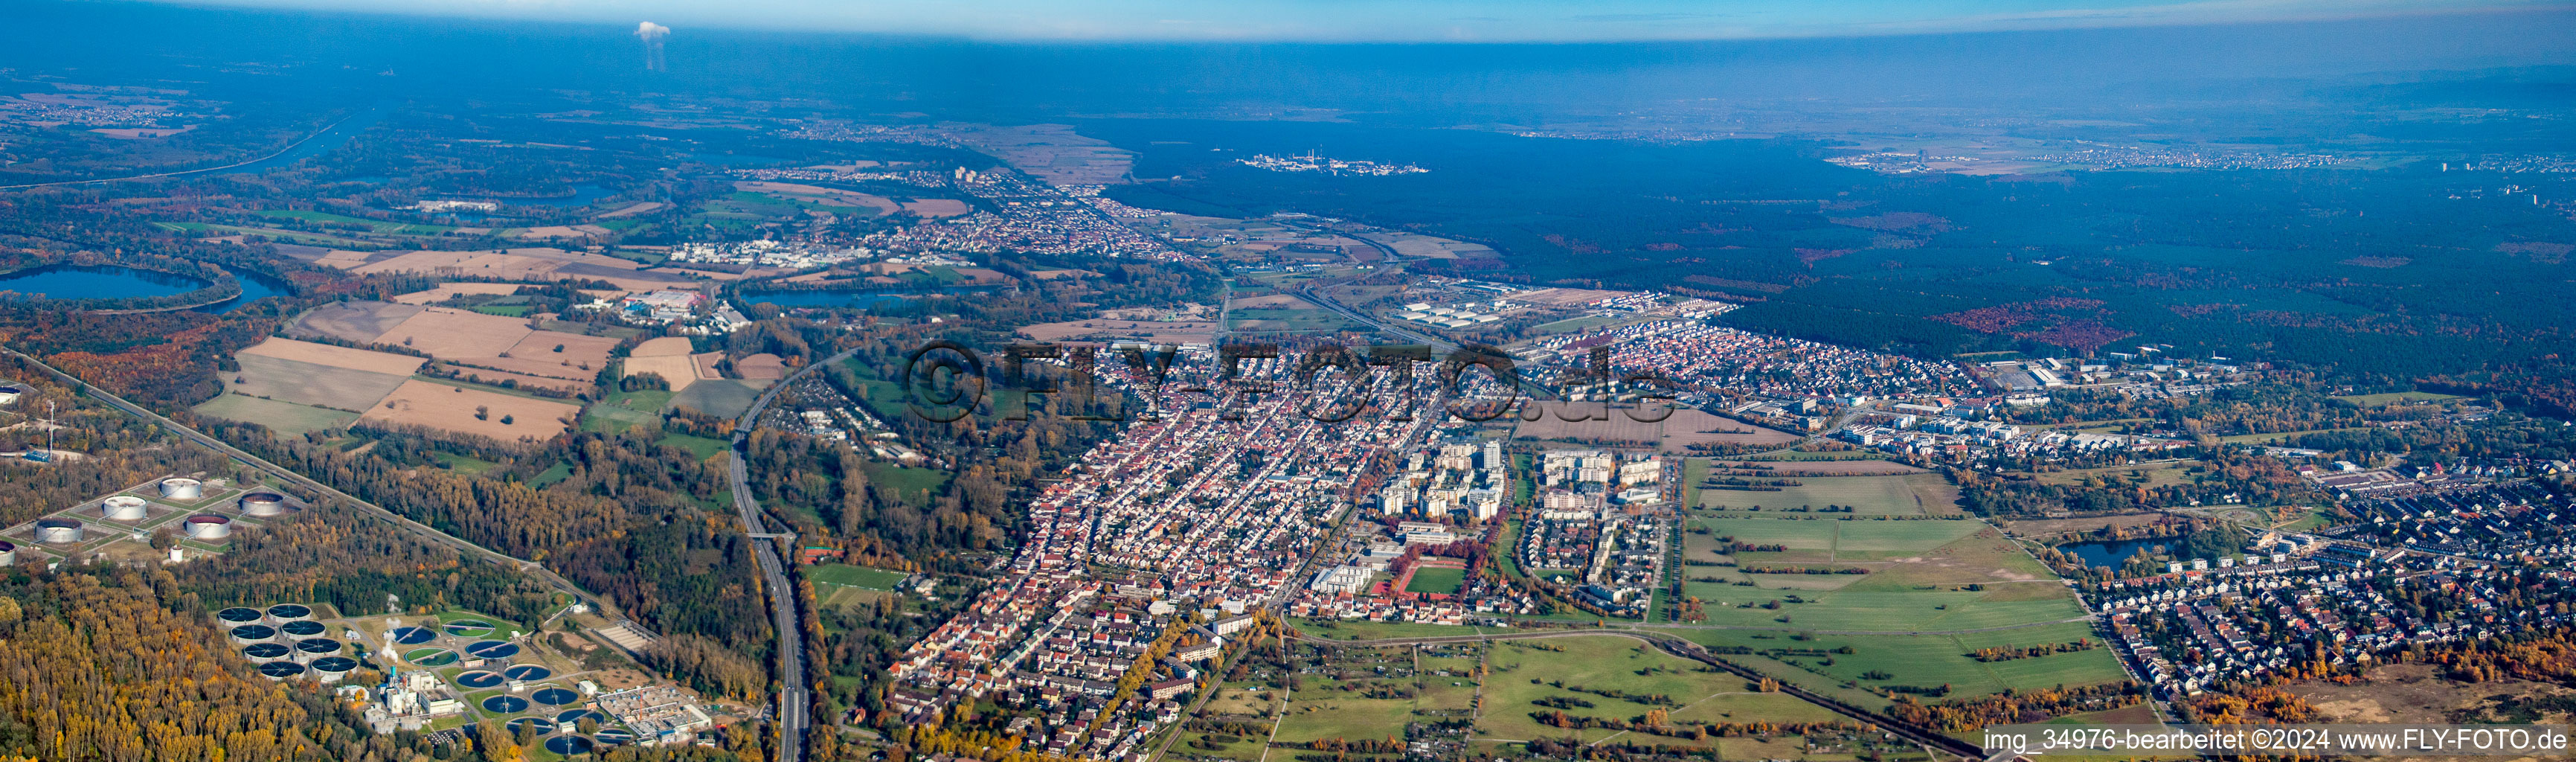 Vue aérienne de Vue panoramique en perspective des rues et des maisons des quartiers résidentiels à le quartier Neureut in Karlsruhe dans le département Bade-Wurtemberg, Allemagne